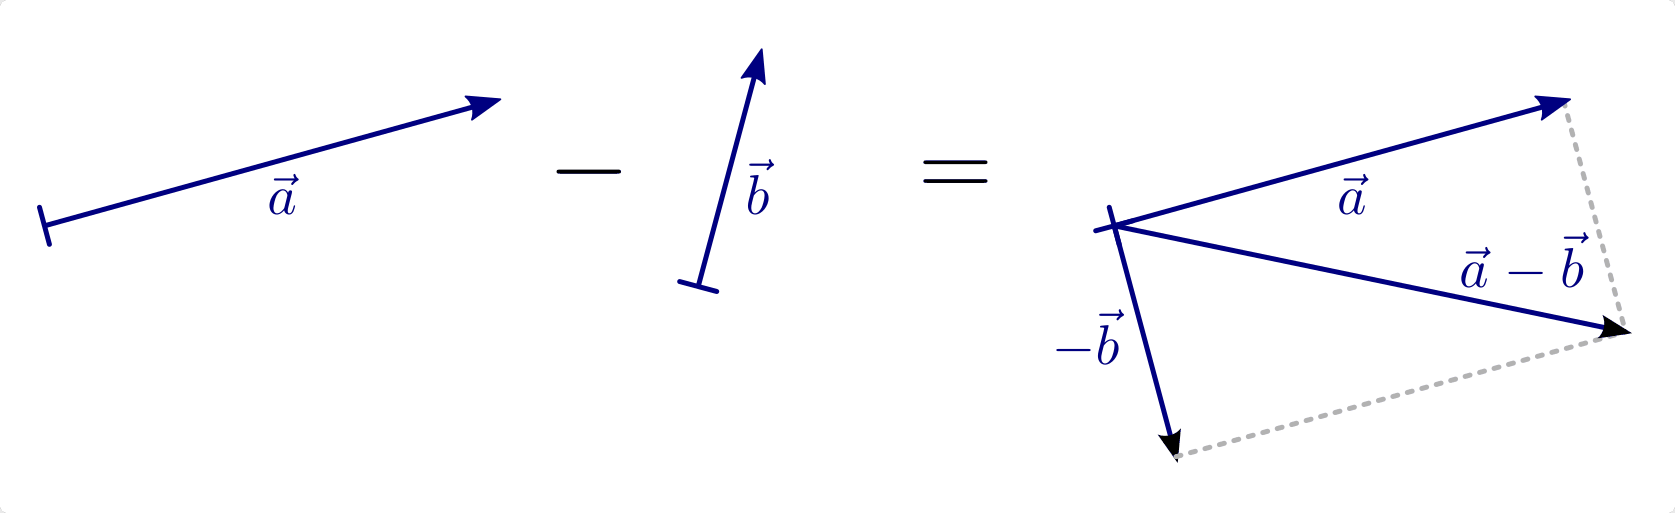 fig-vektor-subtraktion